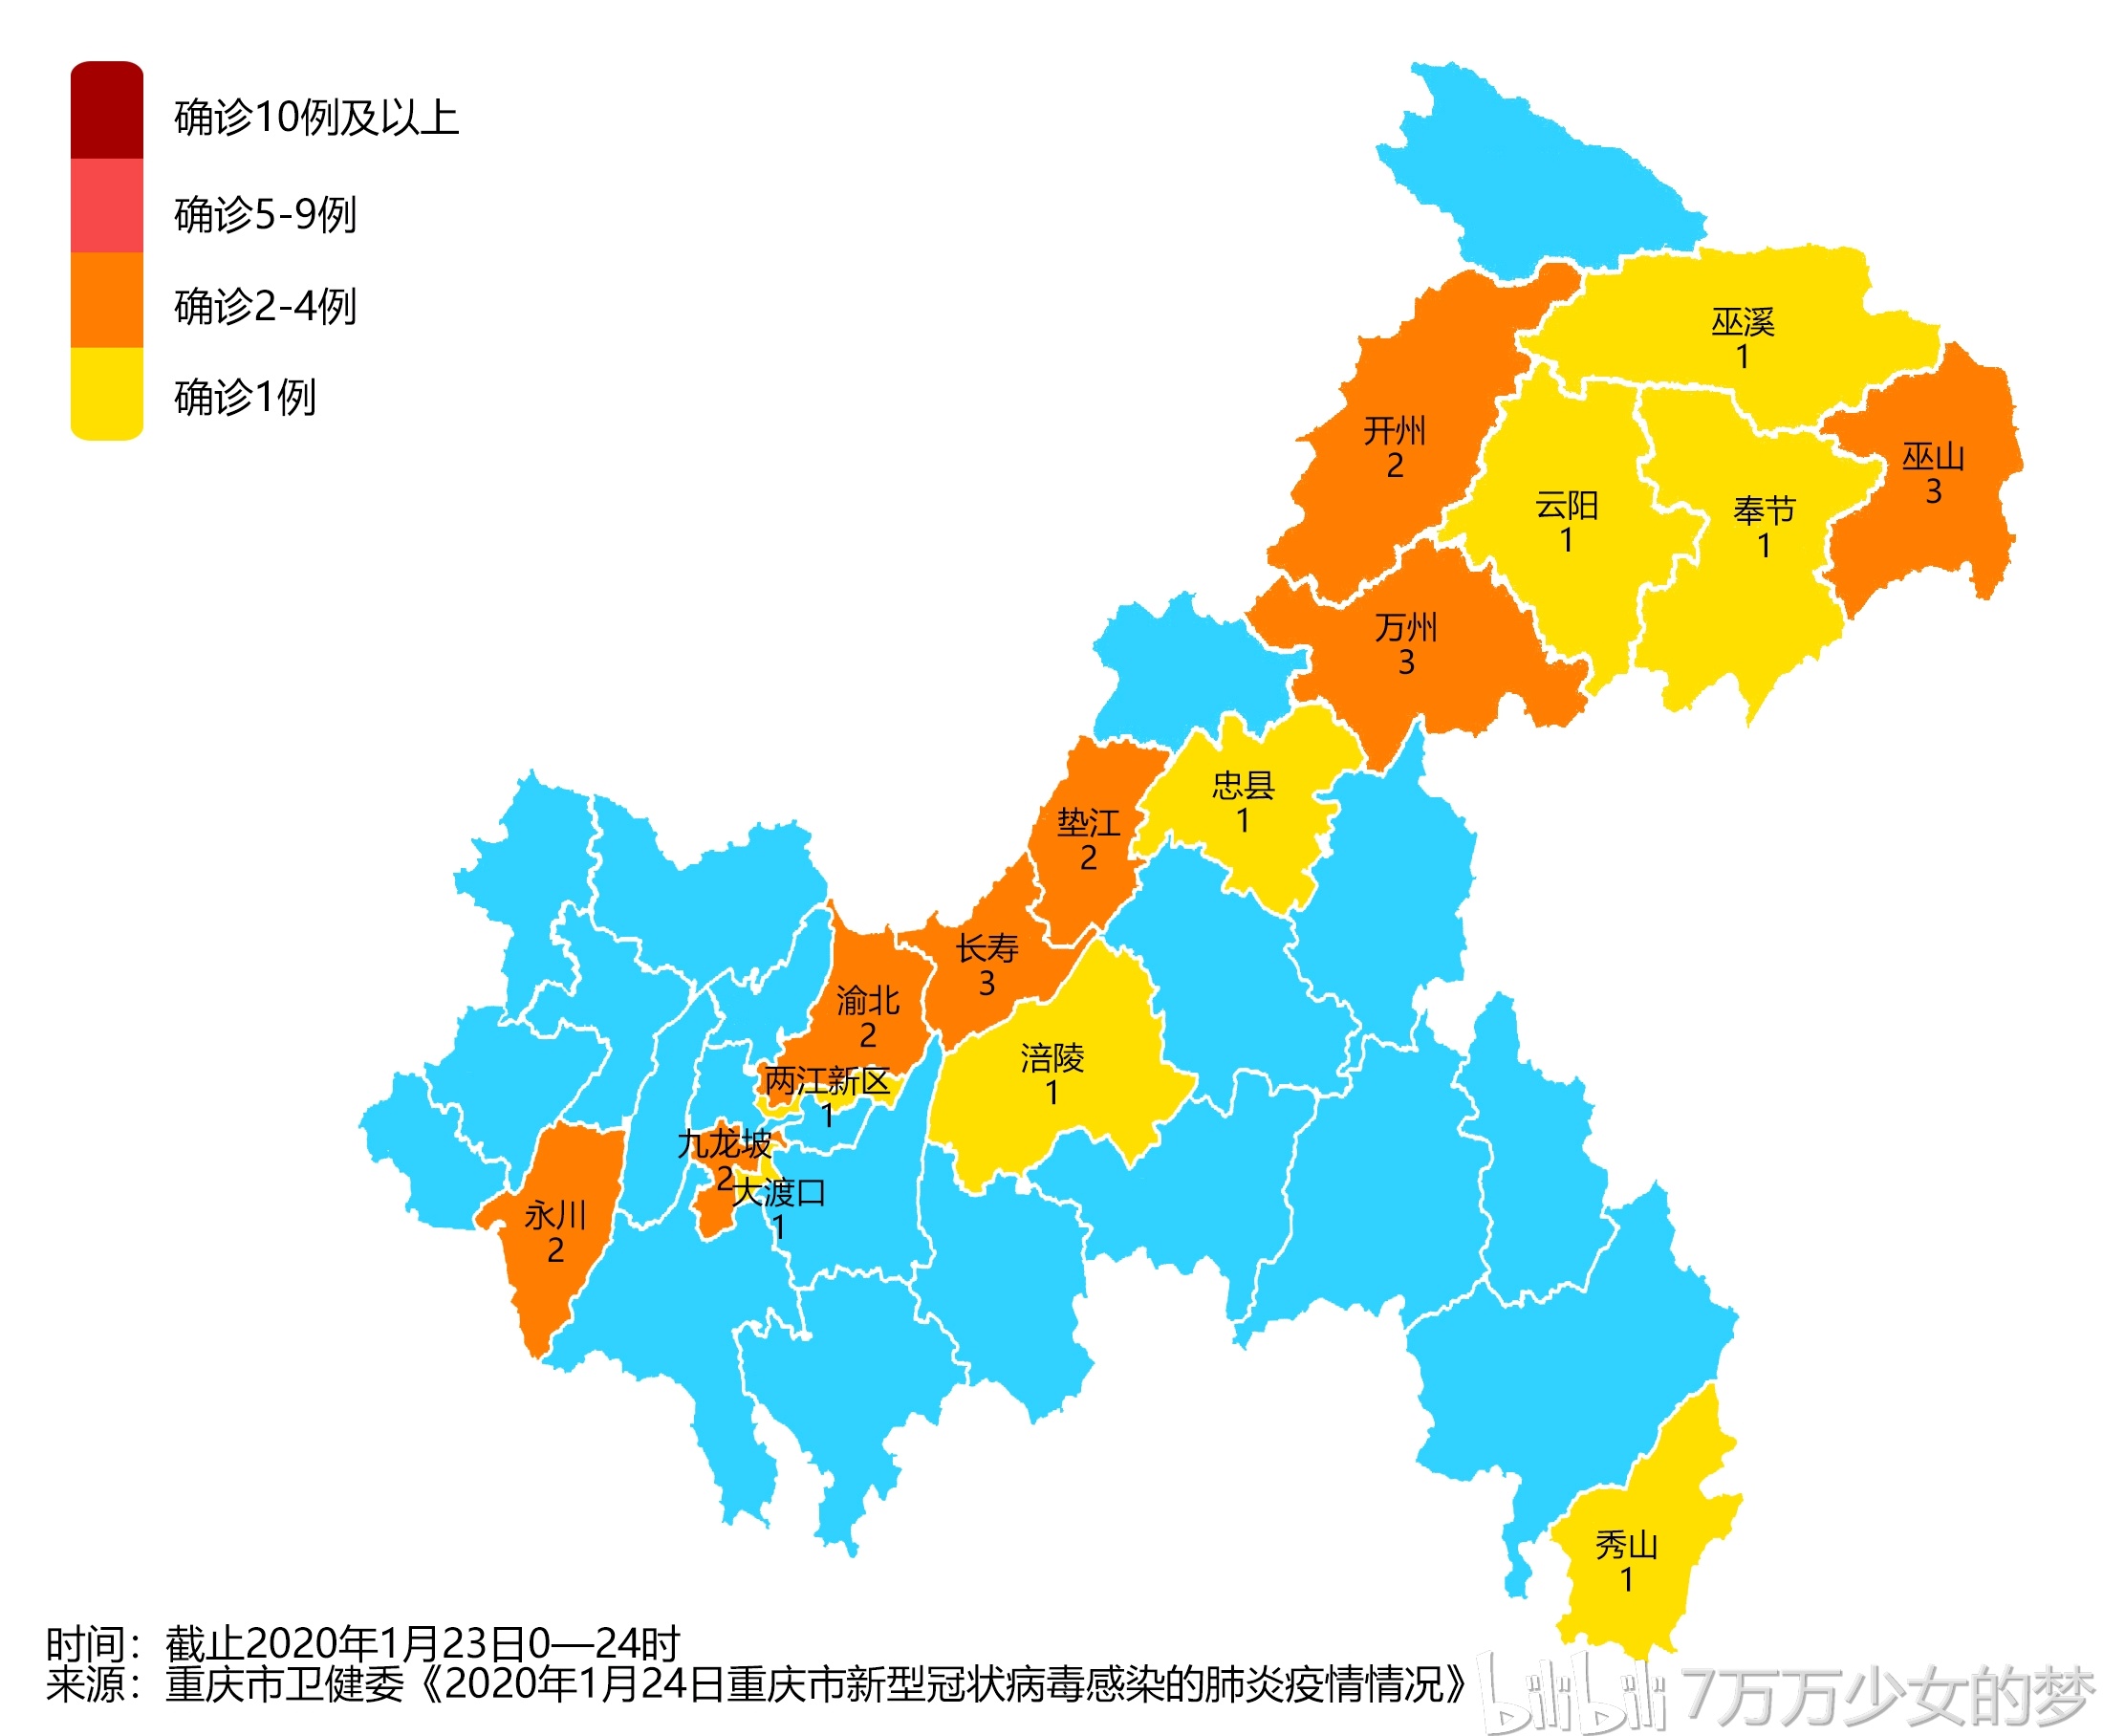 【全国#最新疫情地图#来了!】浙江仅次于湖北,成第二严重区域图片